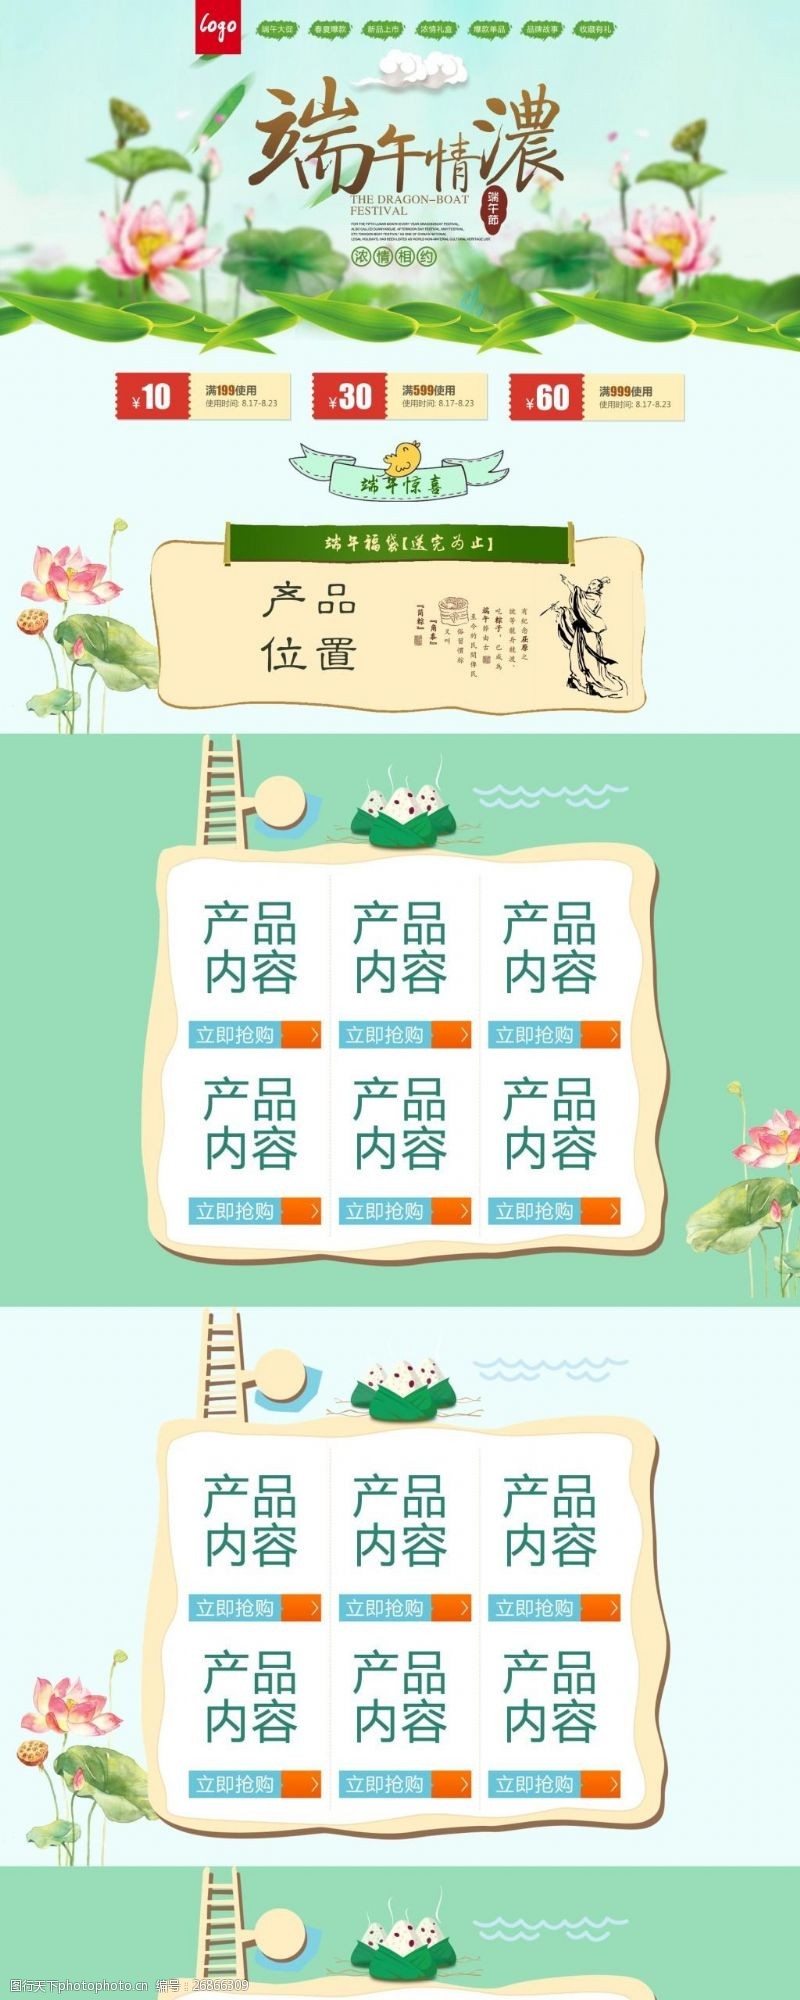 端午天猫首页粽子节端午节淘宝天猫首页节日模板海报设计